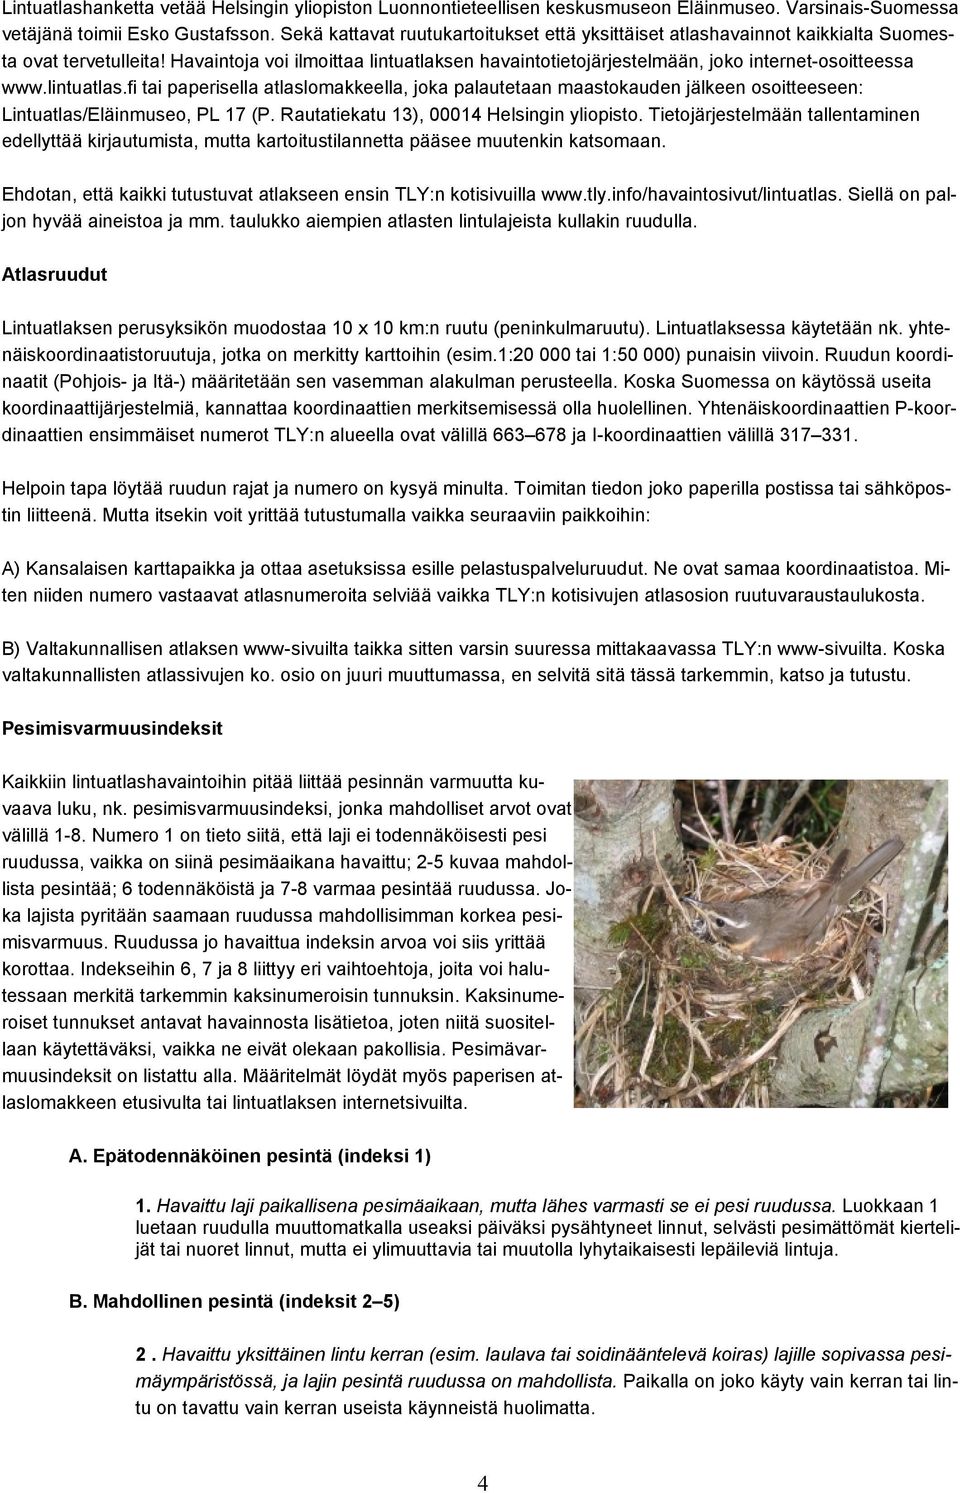 Havaintoja voi ilmoittaa lintuatlaksen havaintotietojärjestelmään, joko internet-osoitteessa www.lintuatlas.